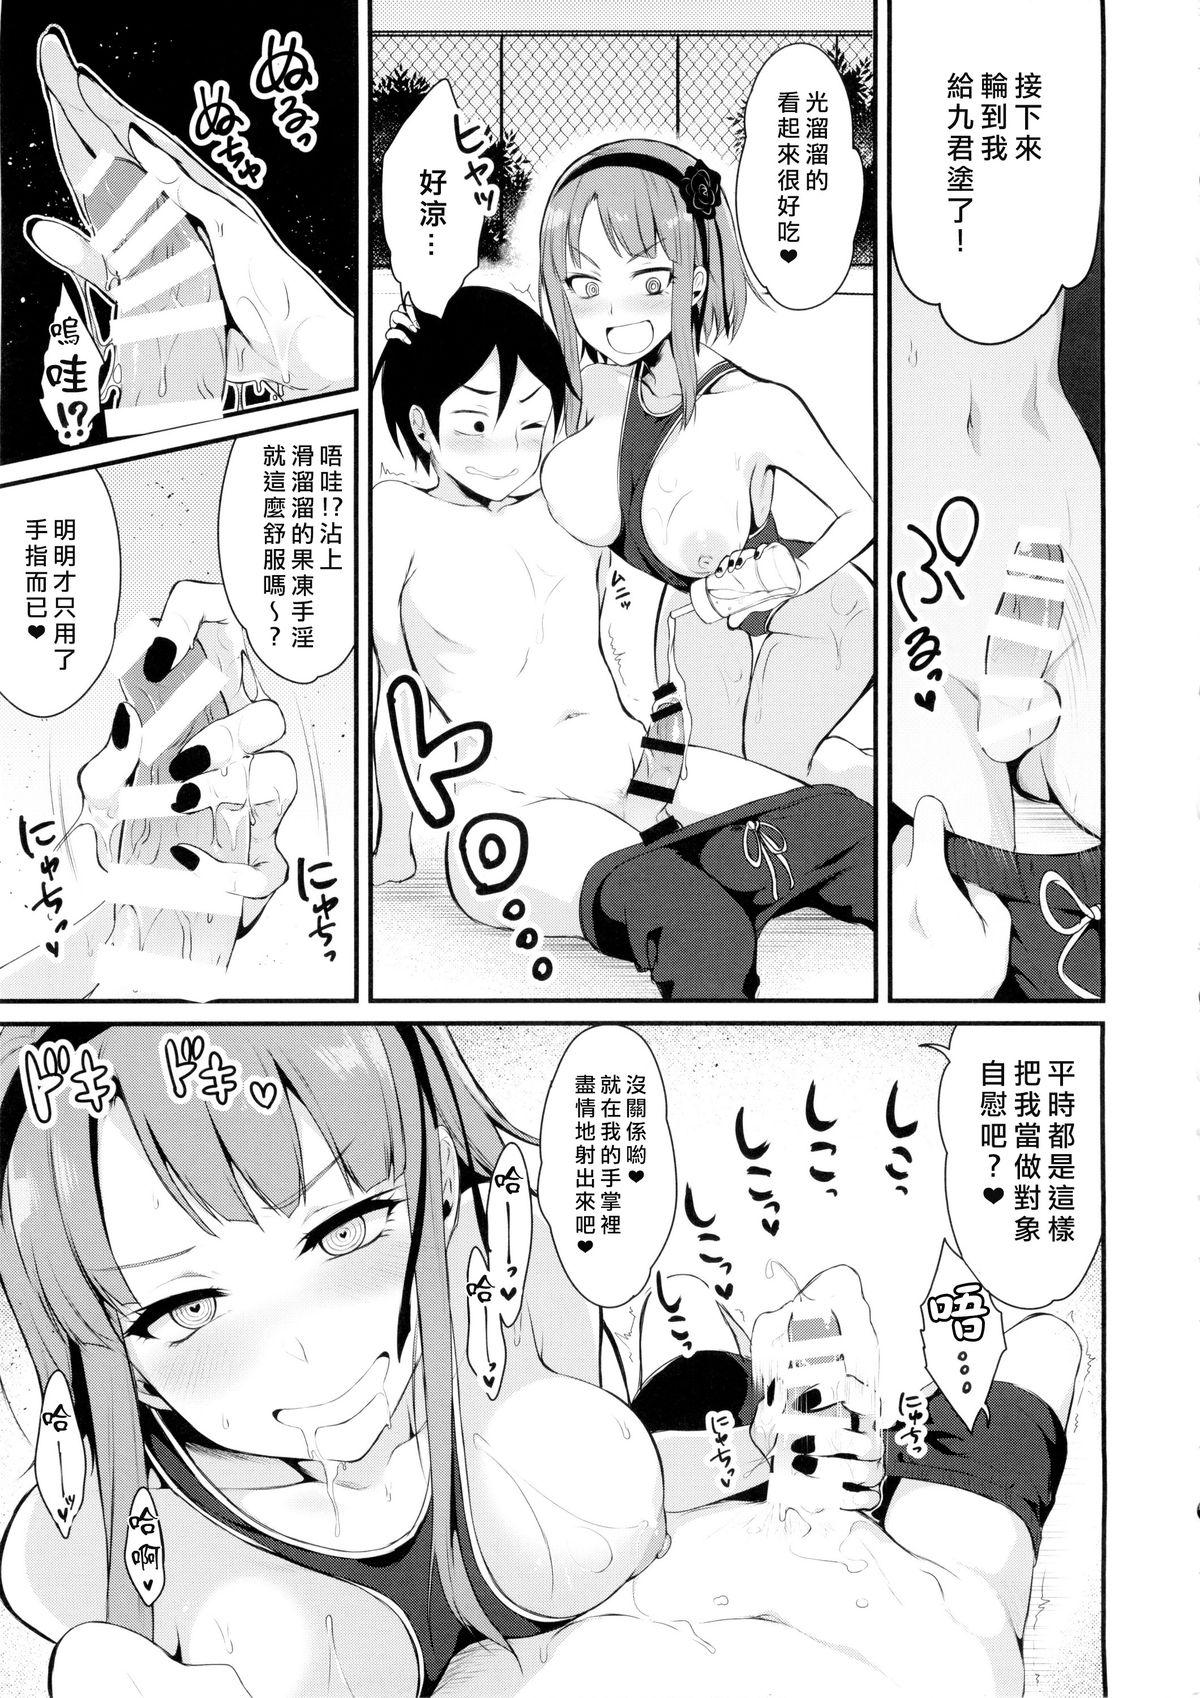 Orgasmo Otona no Dagashi 2 - Dagashi kashi Com - Page 10